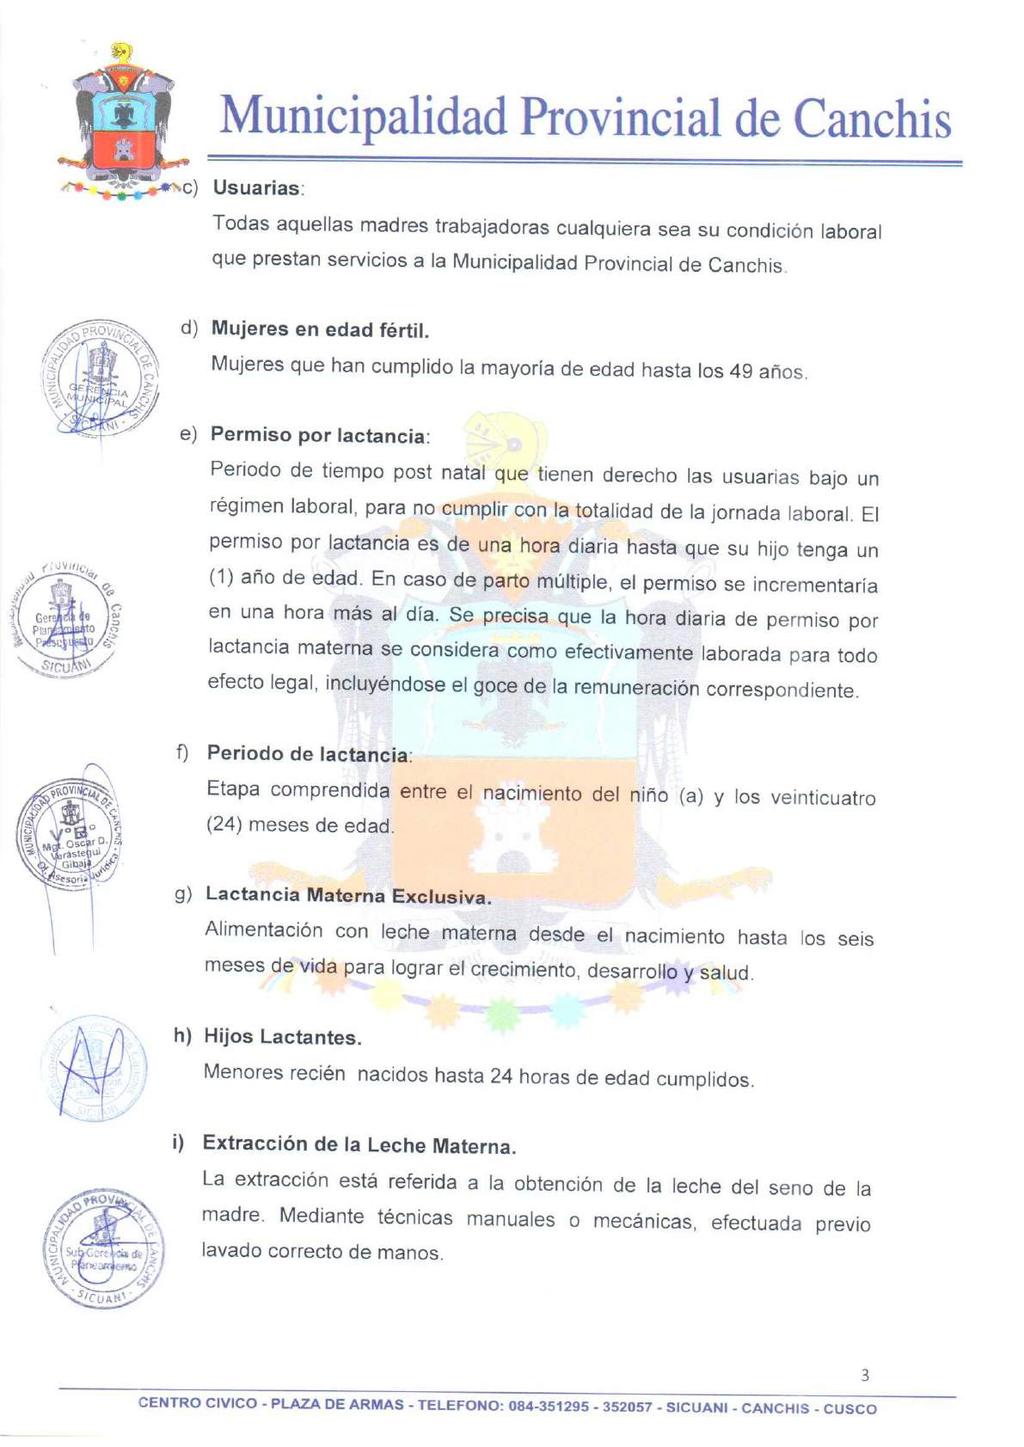 " Municipalidad Provincial de Canchis Usuarias: Todas aquellas madres trabajadoras cualquiera sea su condición laboral que prestan servicios a la Municipalidad Provincial de Canchis.